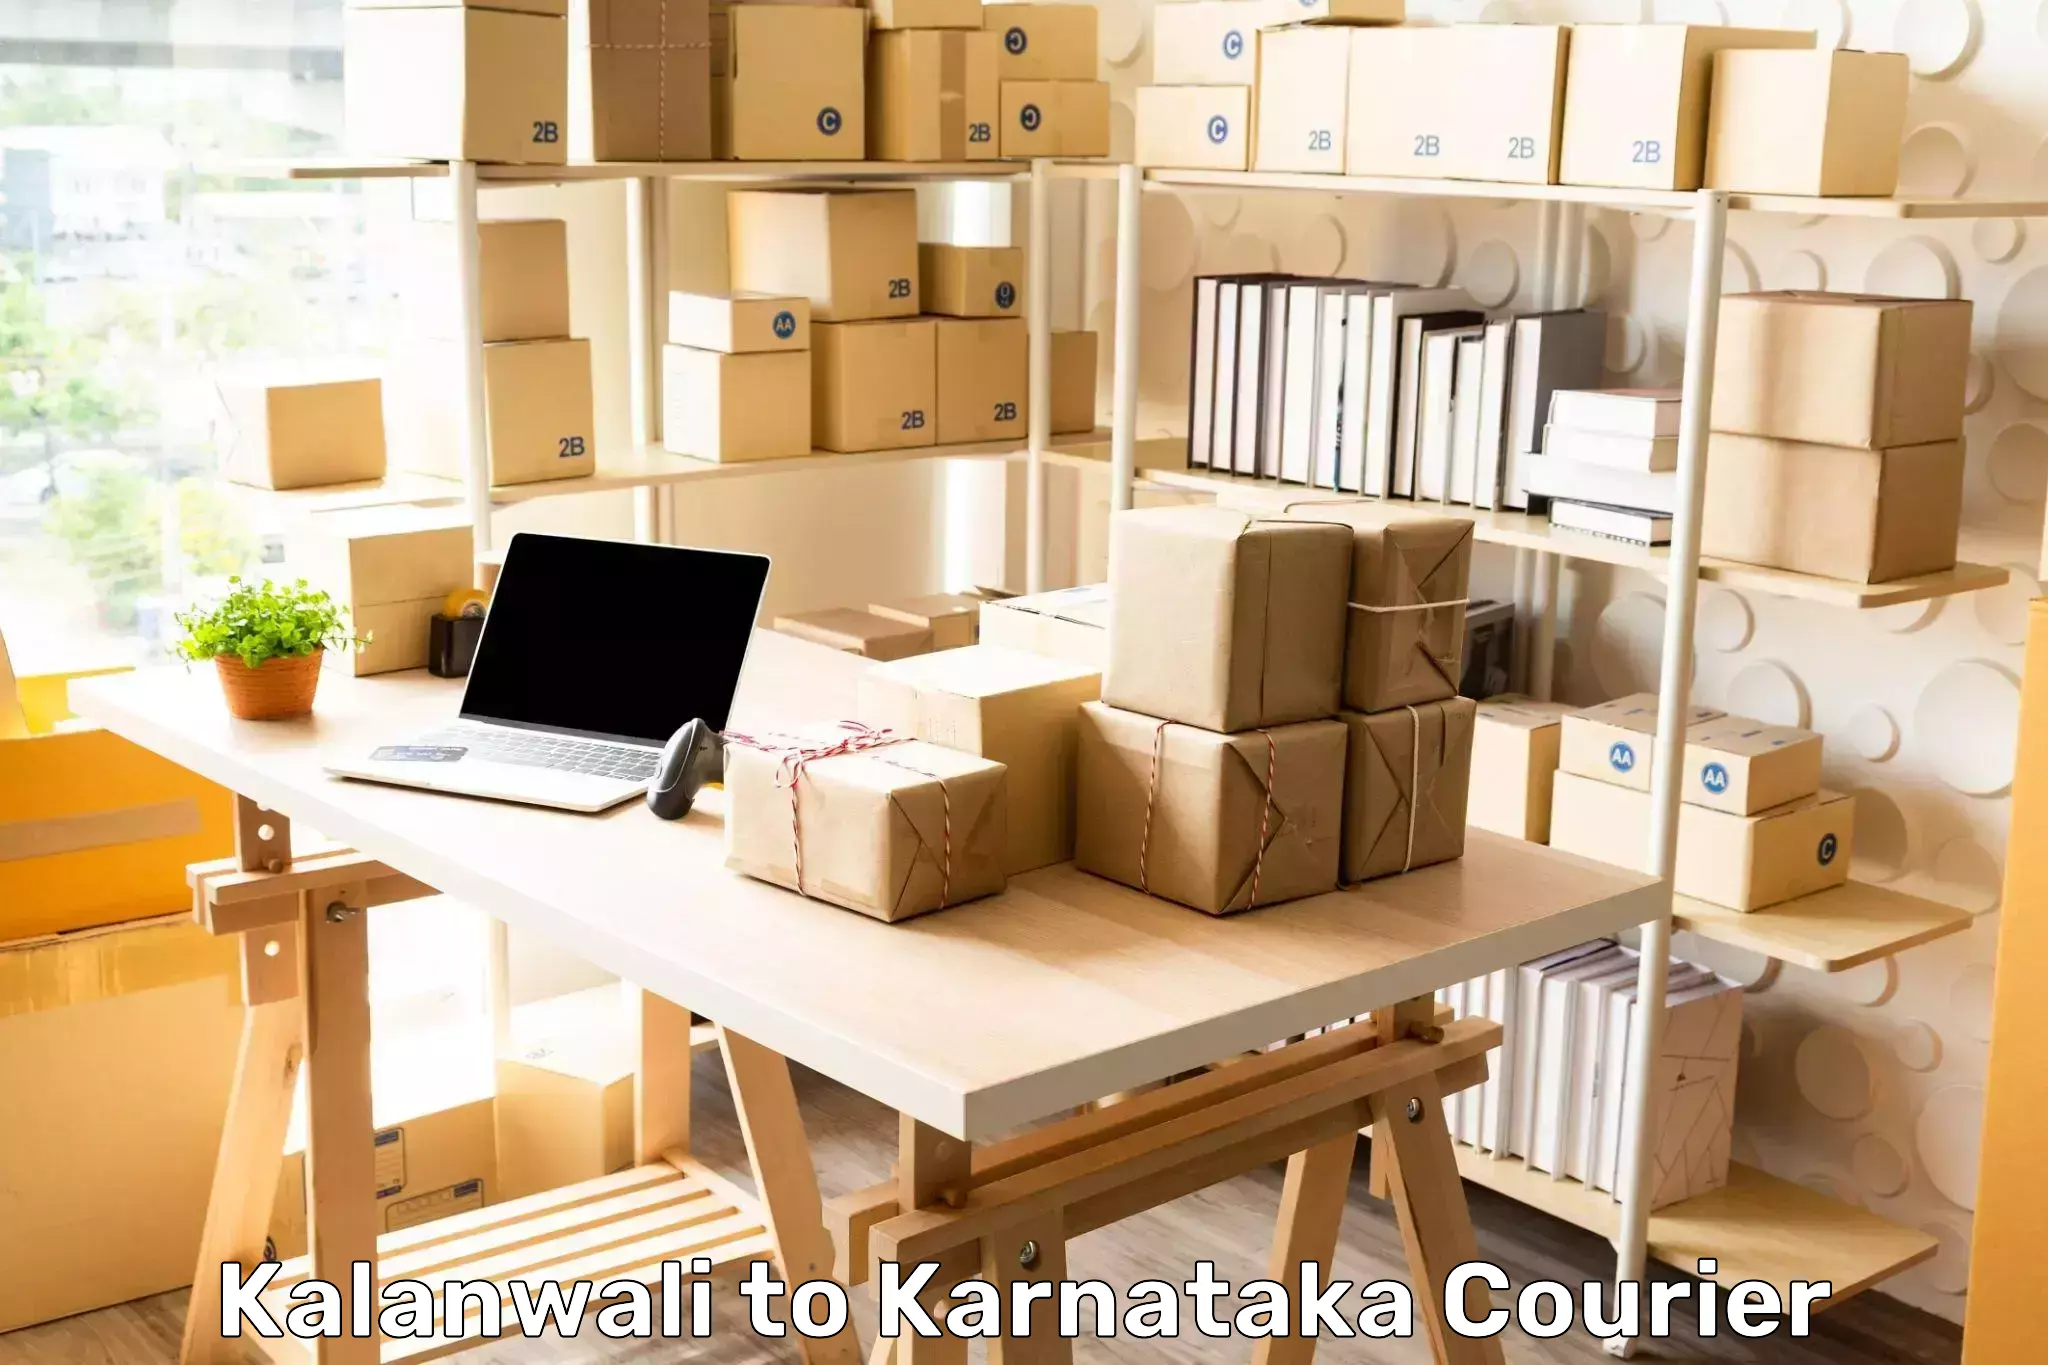 Package forwarding Kalanwali to Channarayapatna